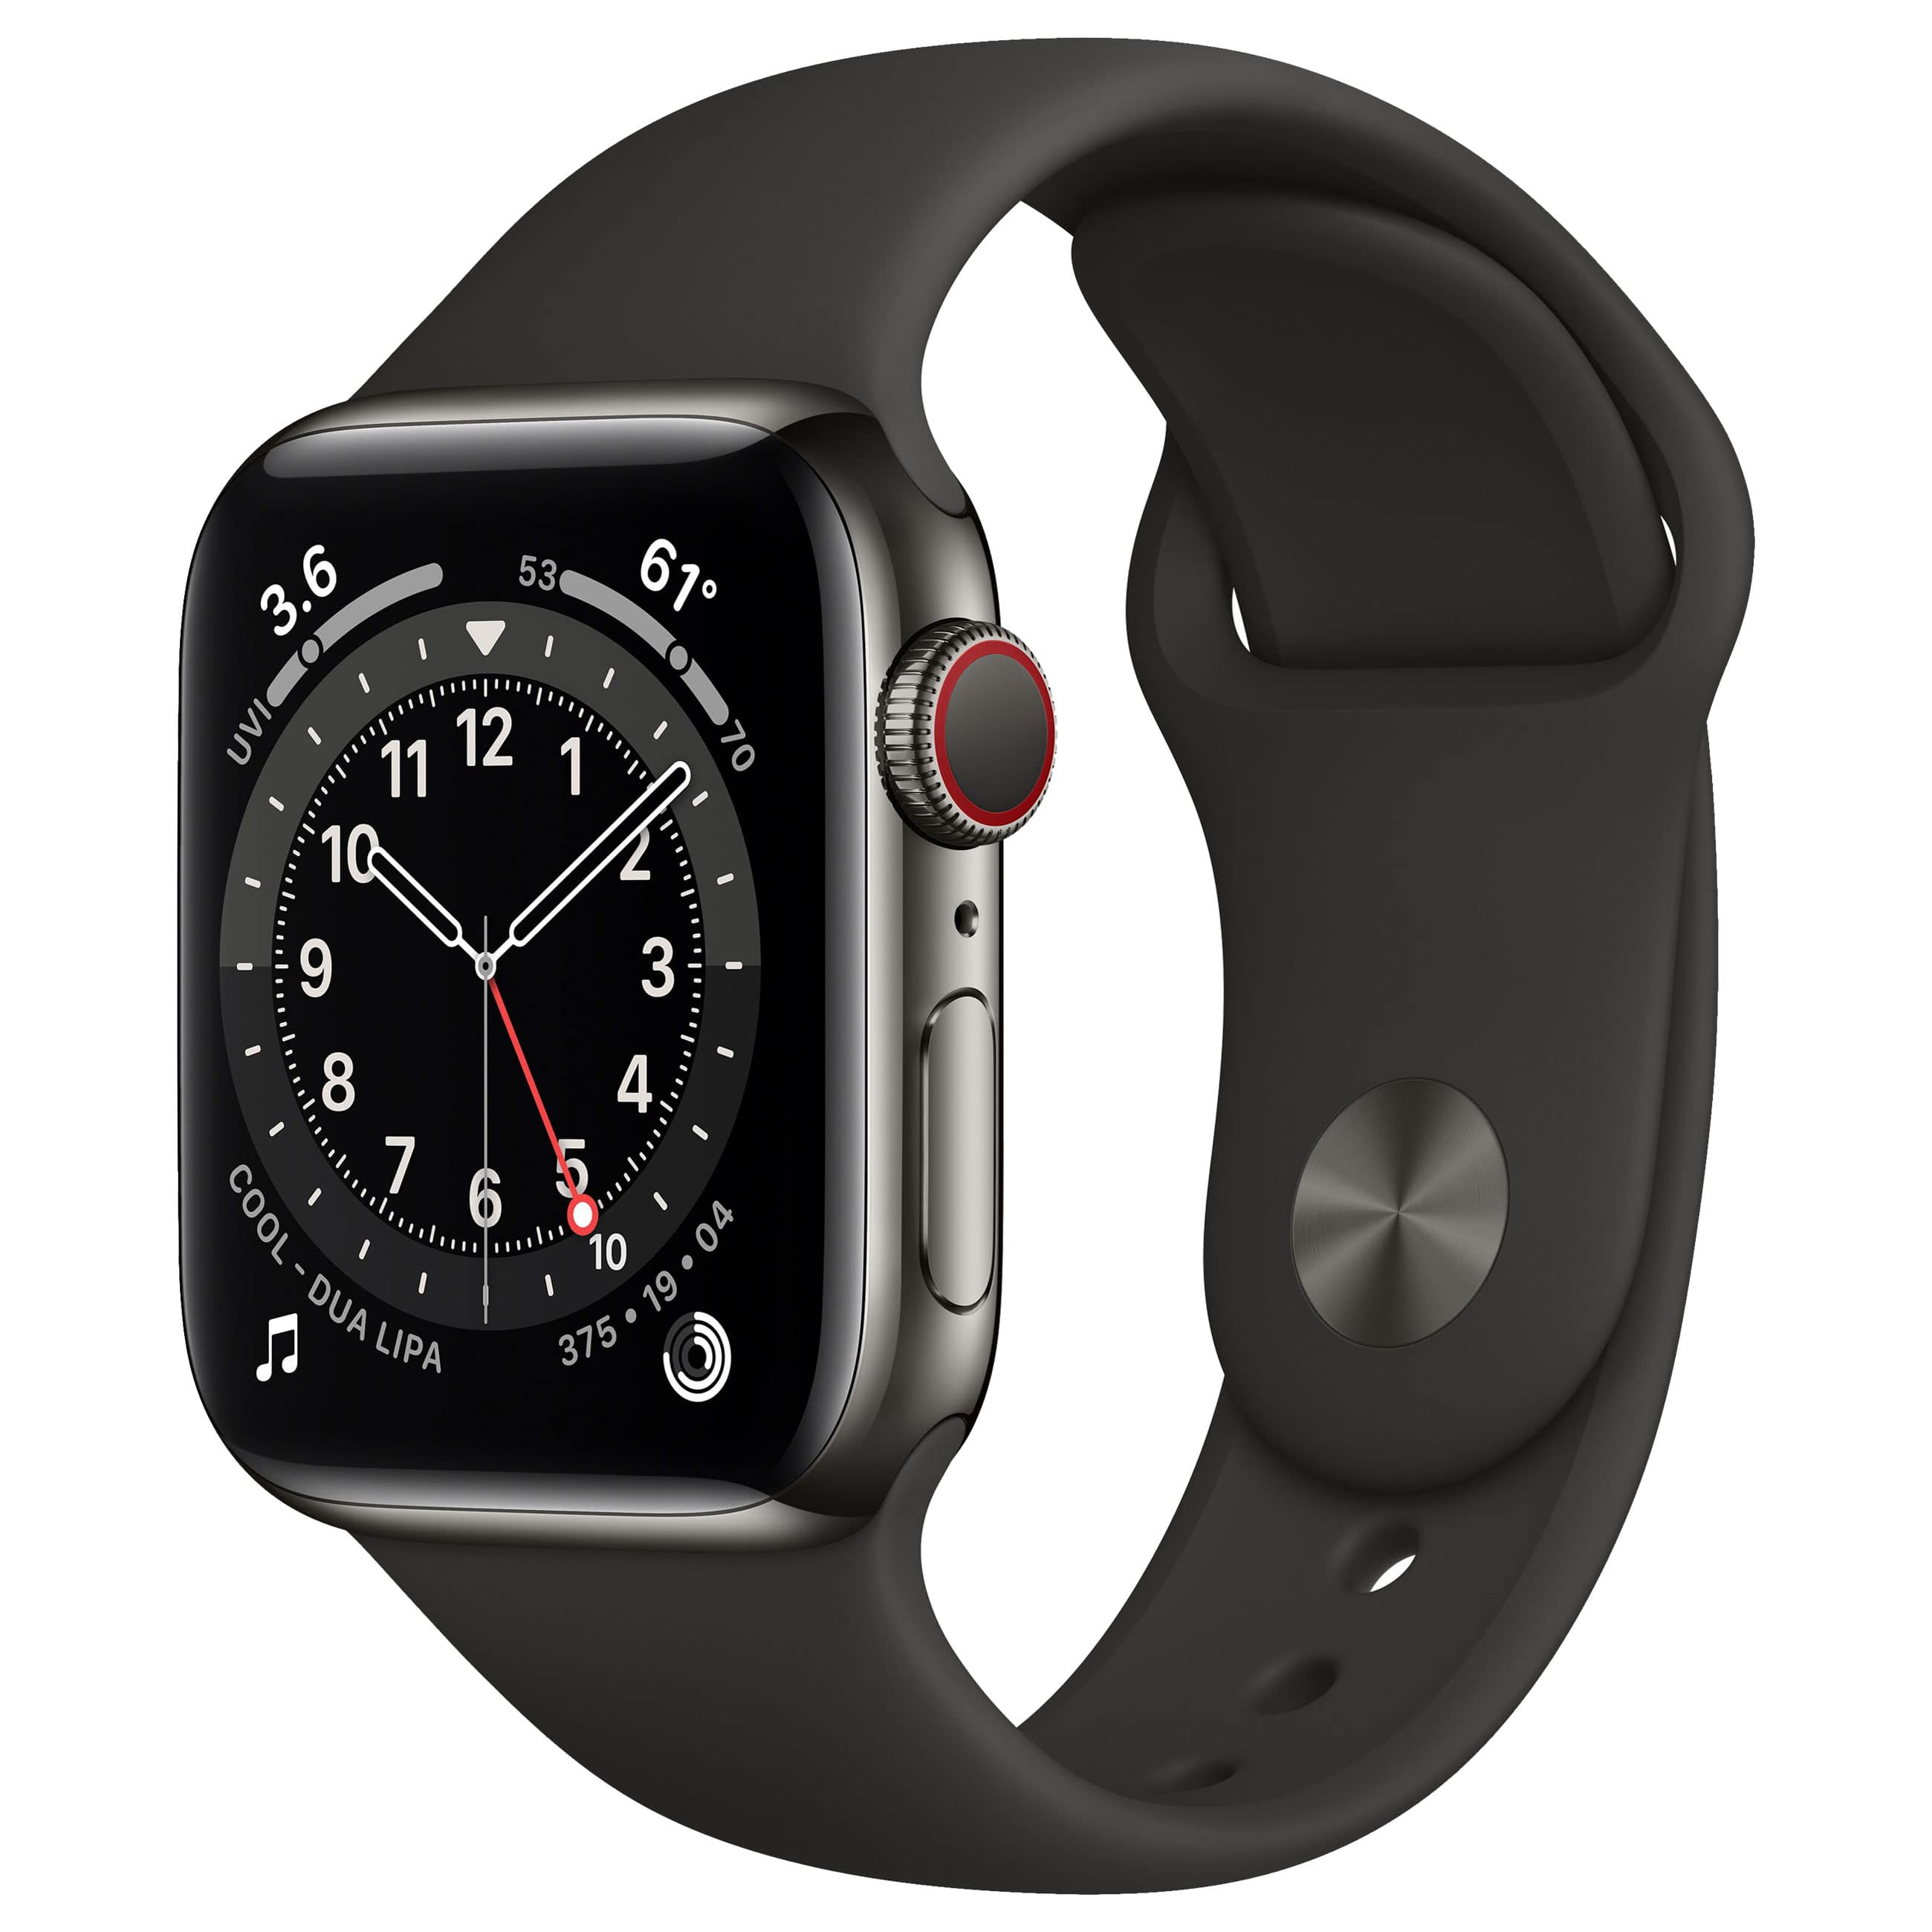 Apple Watch Series 6 (Apple Certified Refurbished)